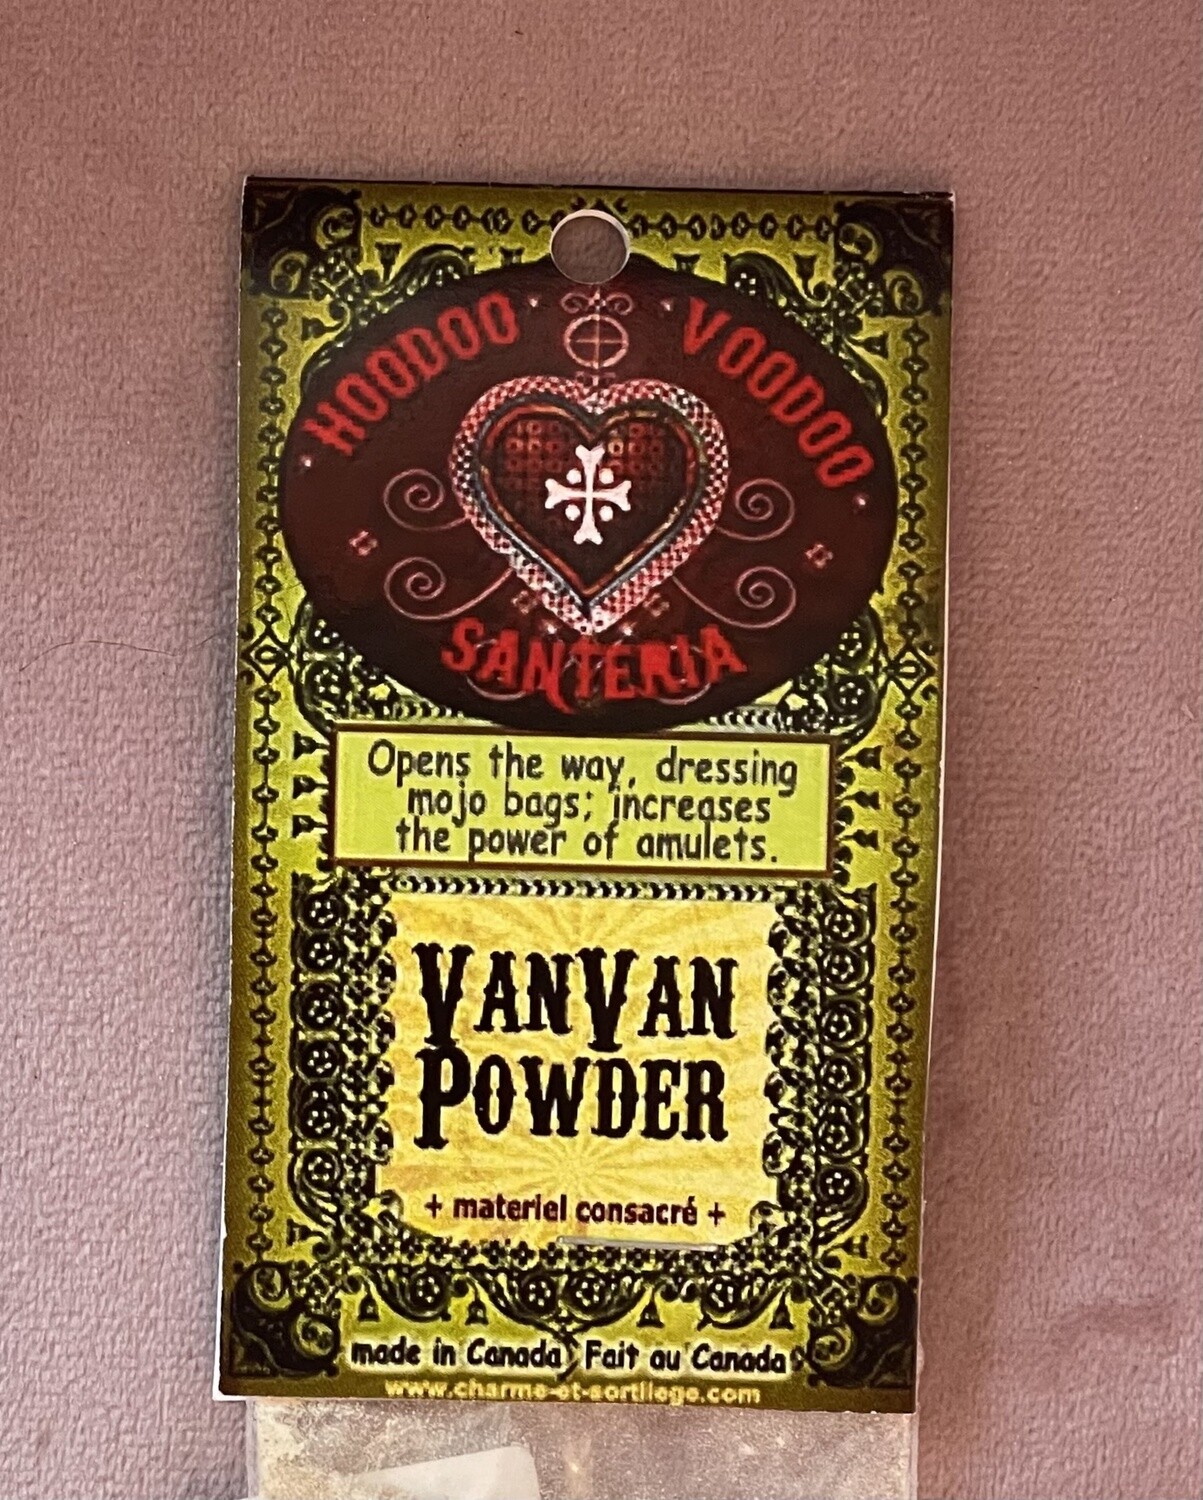 .5oz Van Van powder